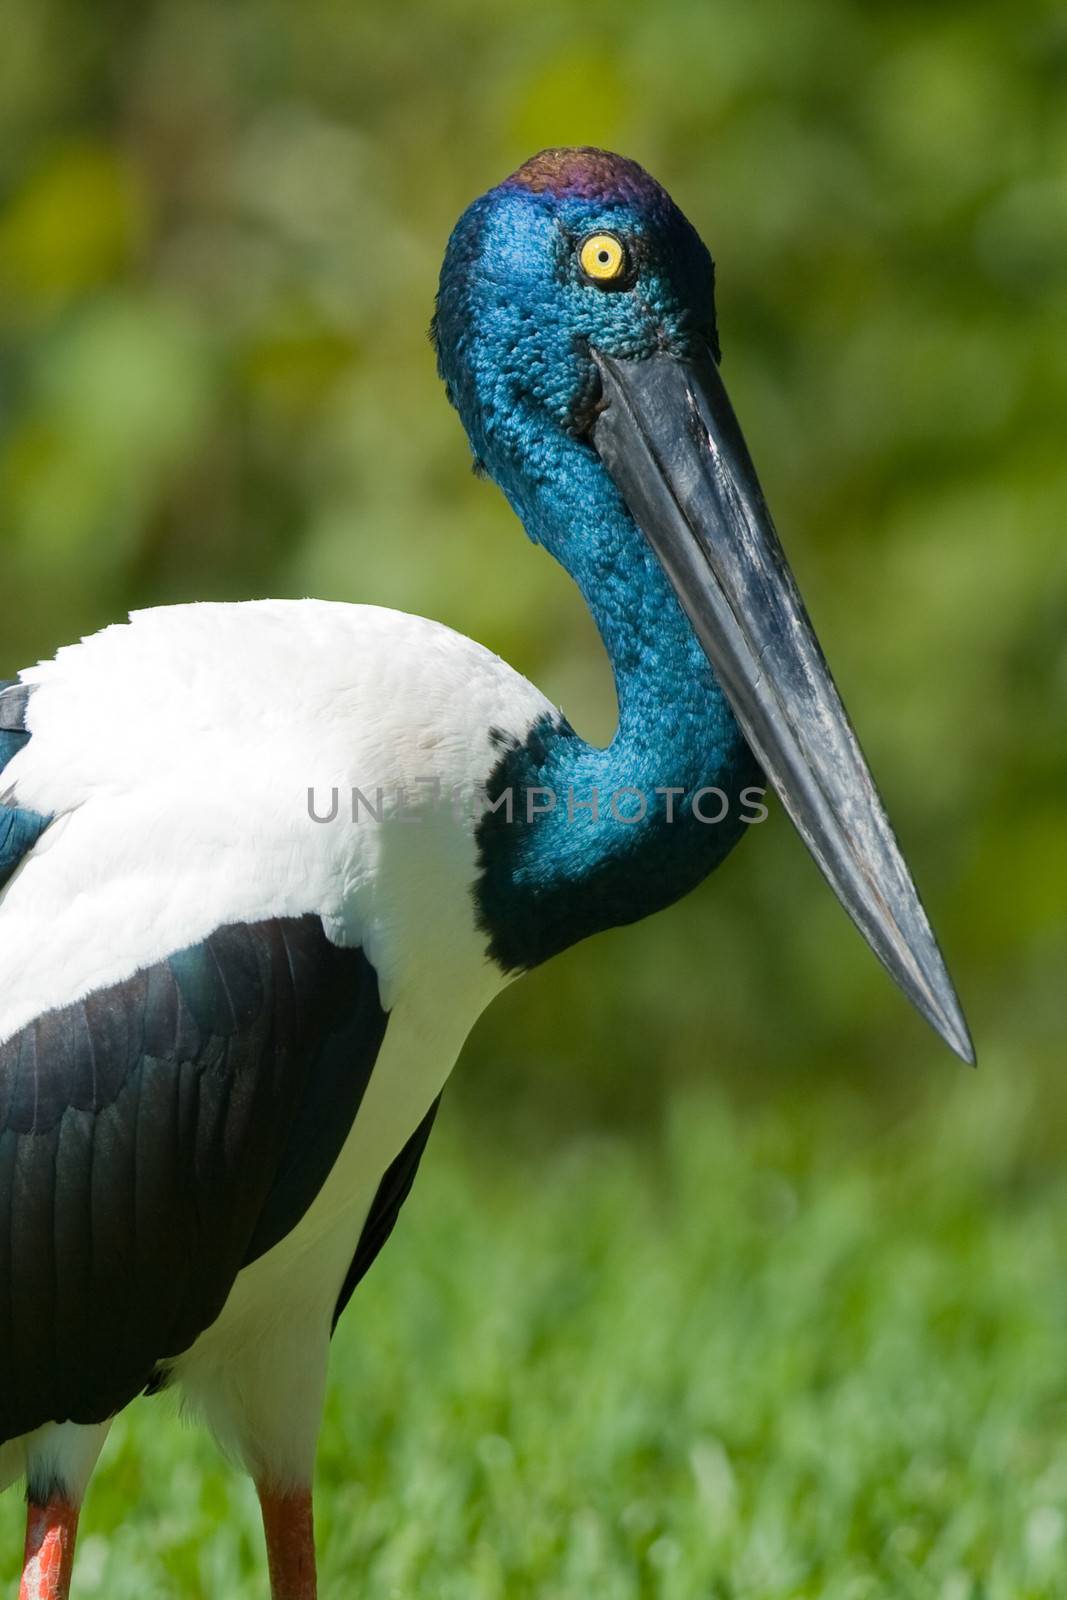 Black-necked Stork by CelsoDiniz